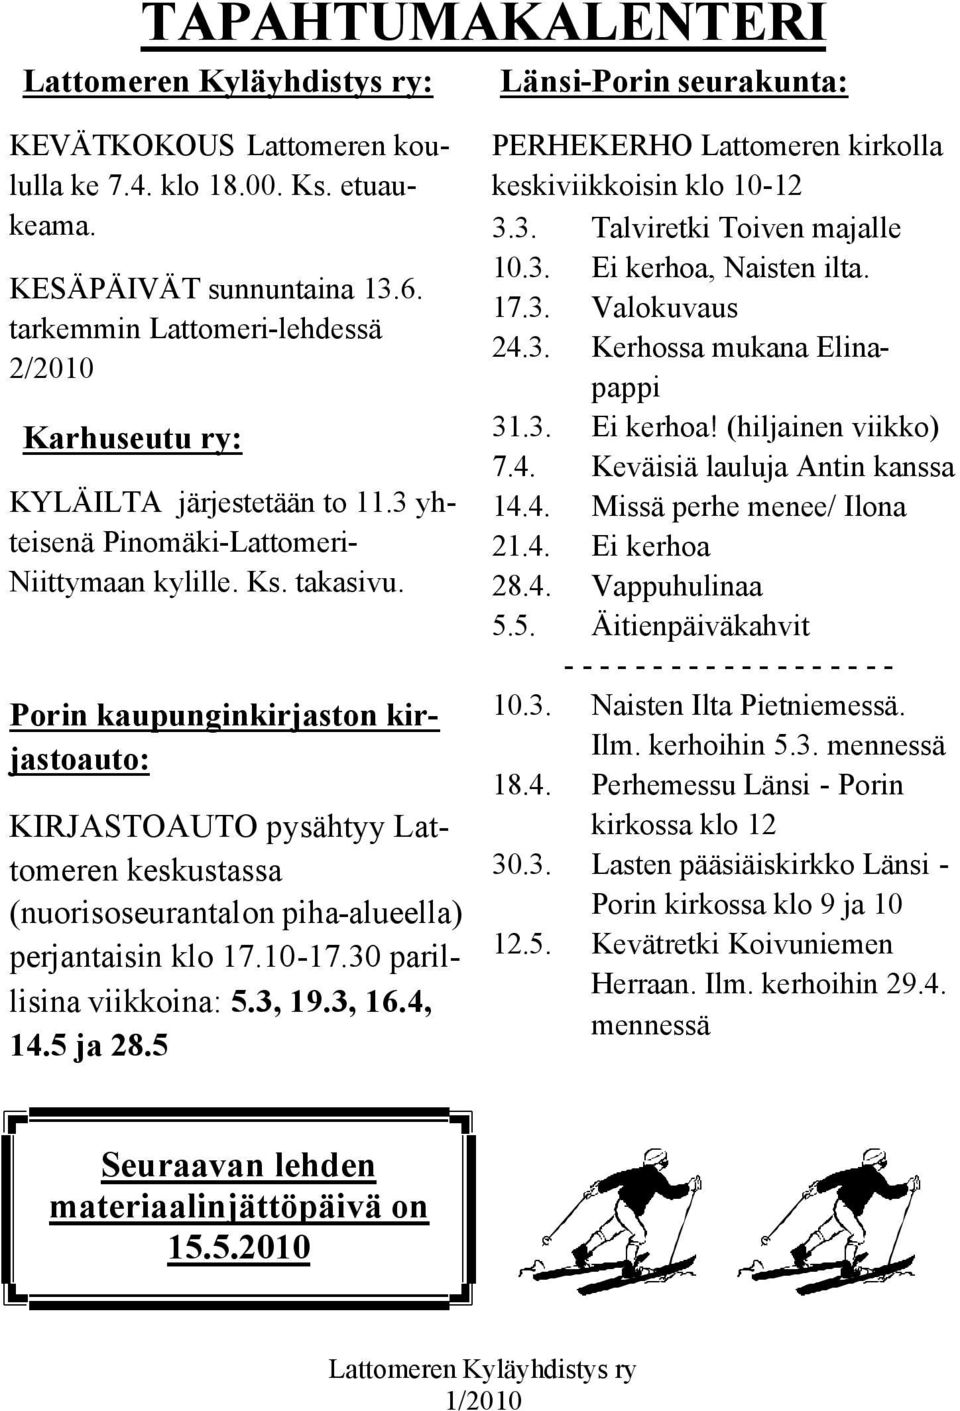 Porin kaupunginkirjaston kirjastoauto: KIRJASTOAUTO pysähtyy Lattomeren keskustassa (nuorisoseurantalon piha-alueella) perjantaisin klo 17.10-17.30 parillisina viikkoina: 5.3, 19.3, 16.4, 14.5 ja 28.